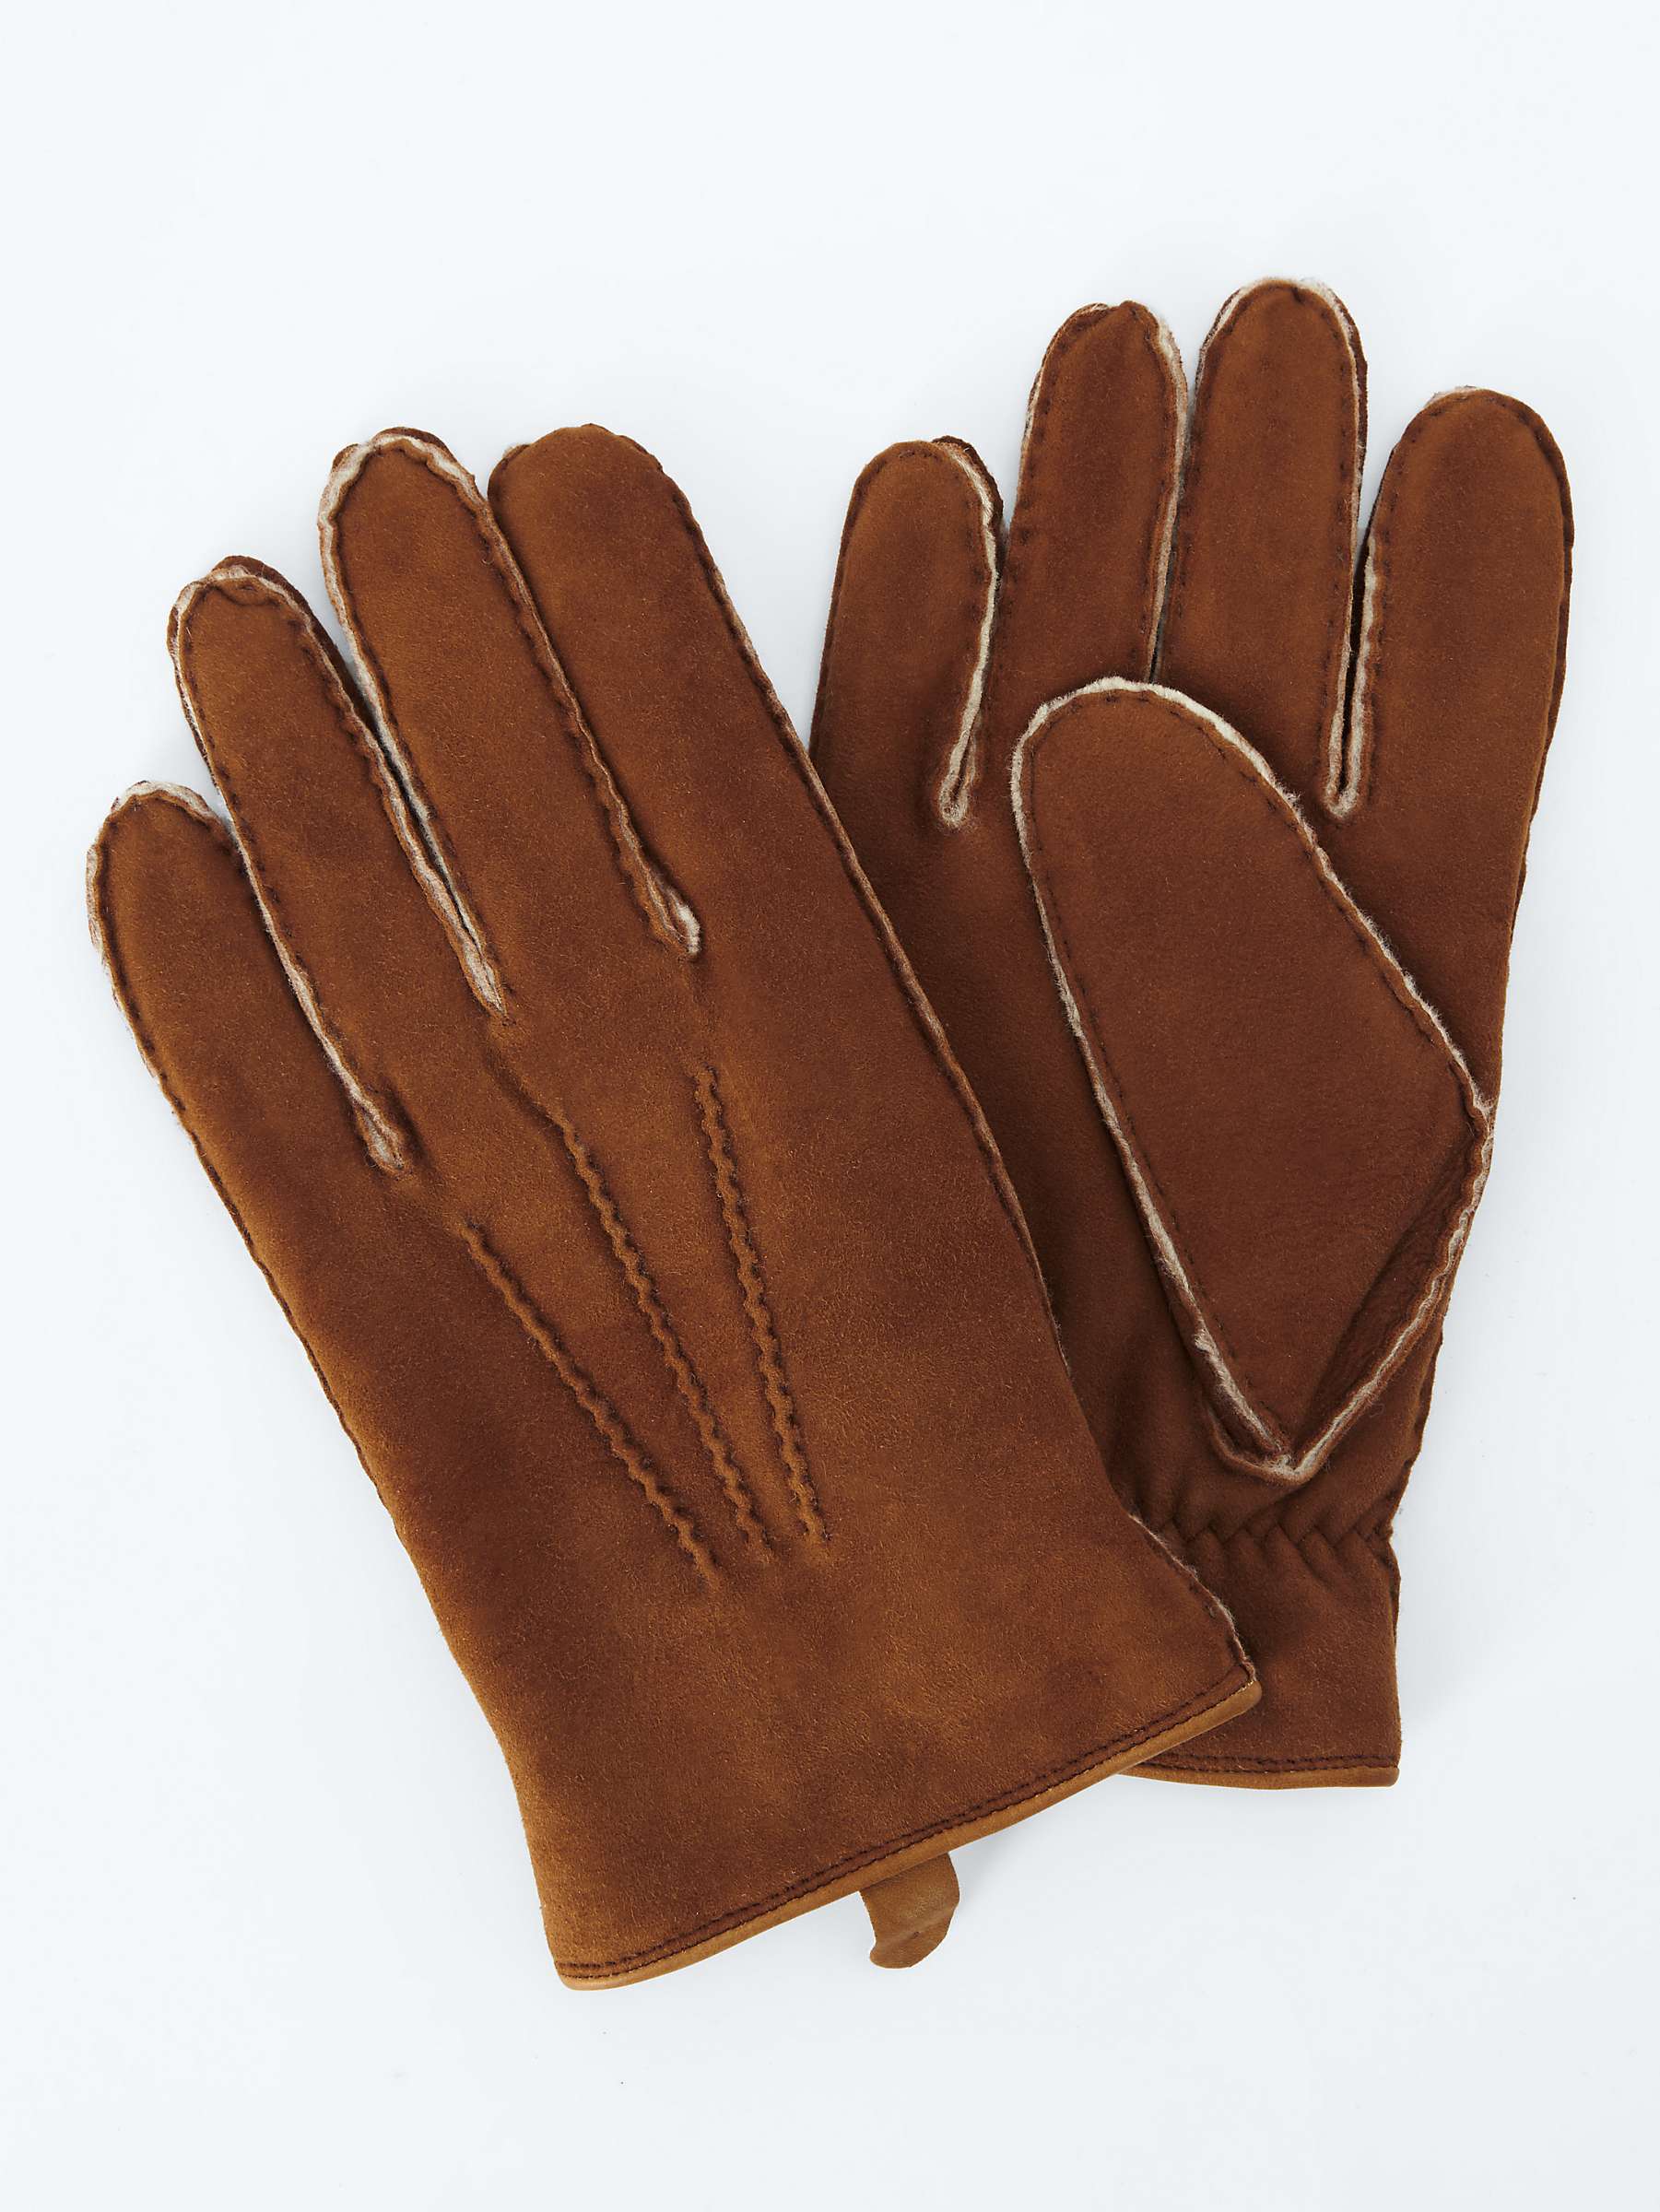 Buy John Lewis Sheepskin Gloves Online at johnlewis.com